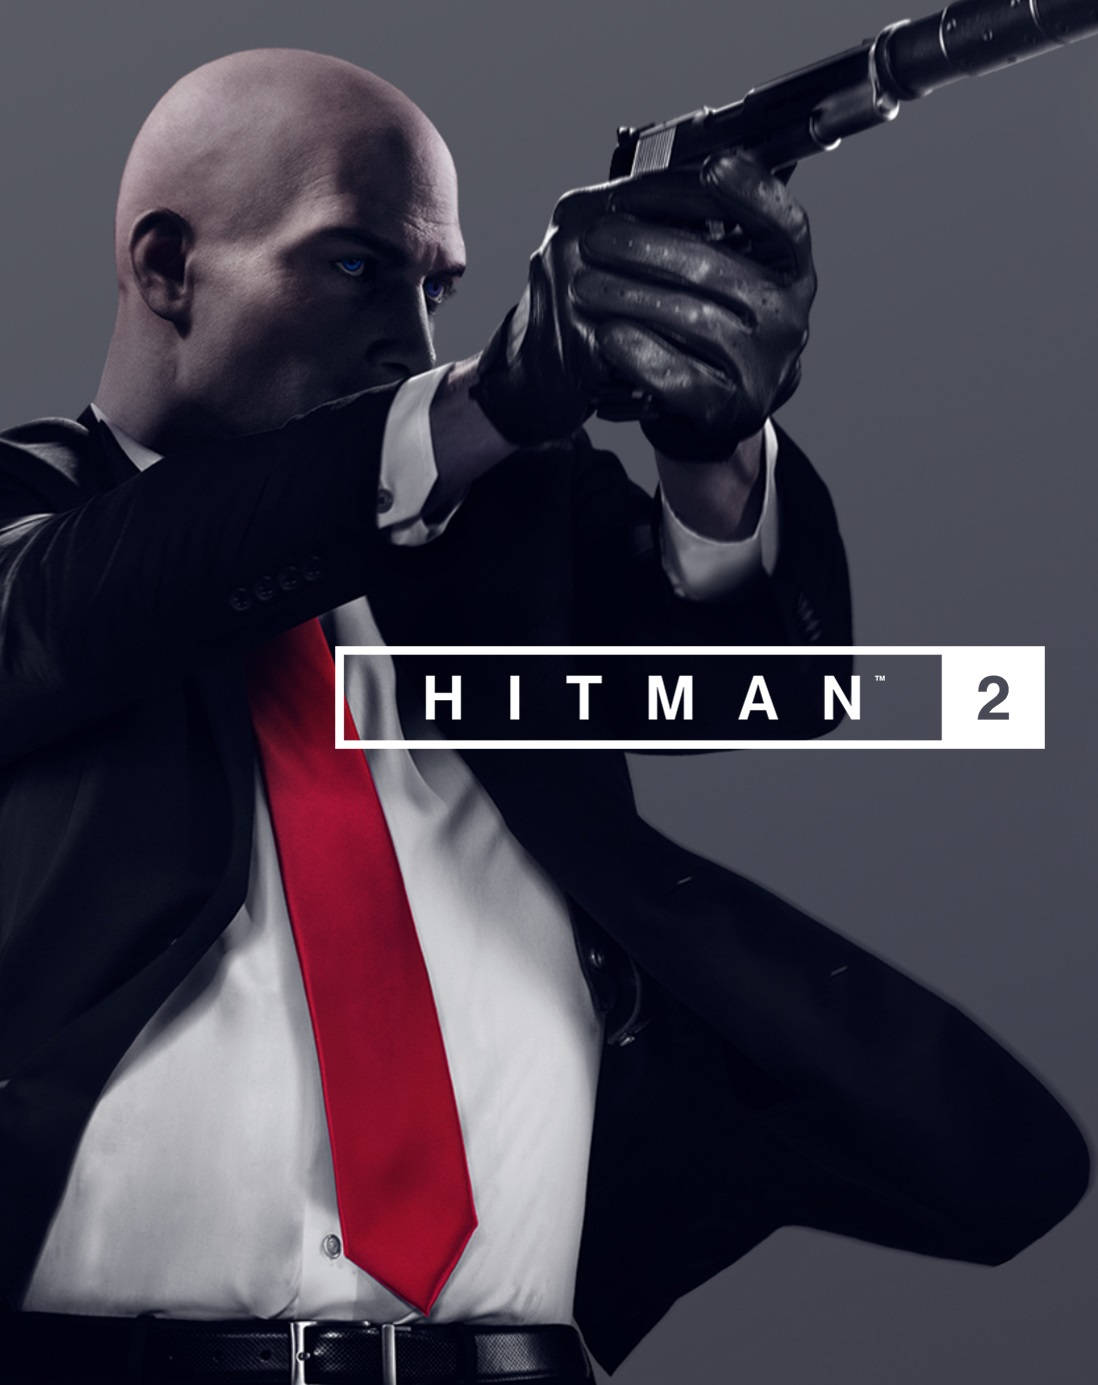 Hitman2018 Agent 47 Med Pistol. Wallpaper